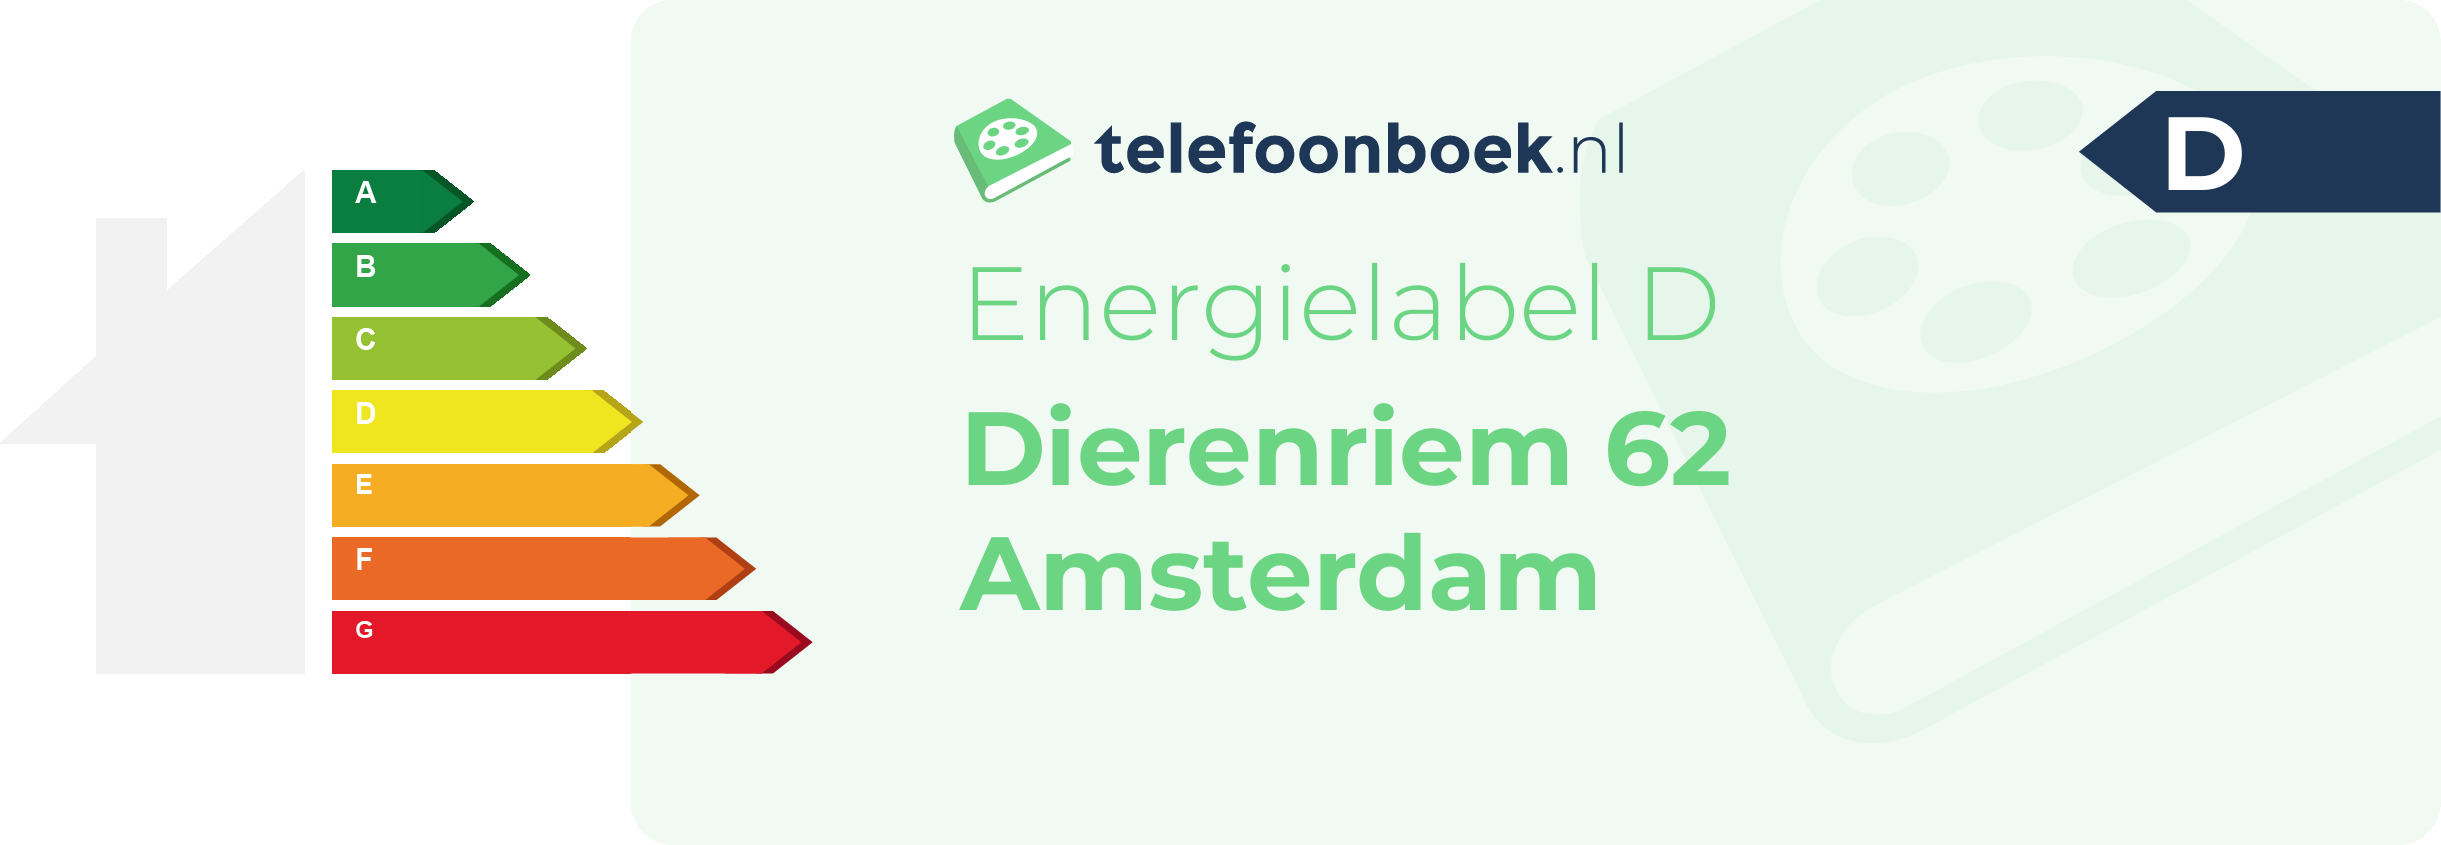 Energielabel Dierenriem 62 Amsterdam